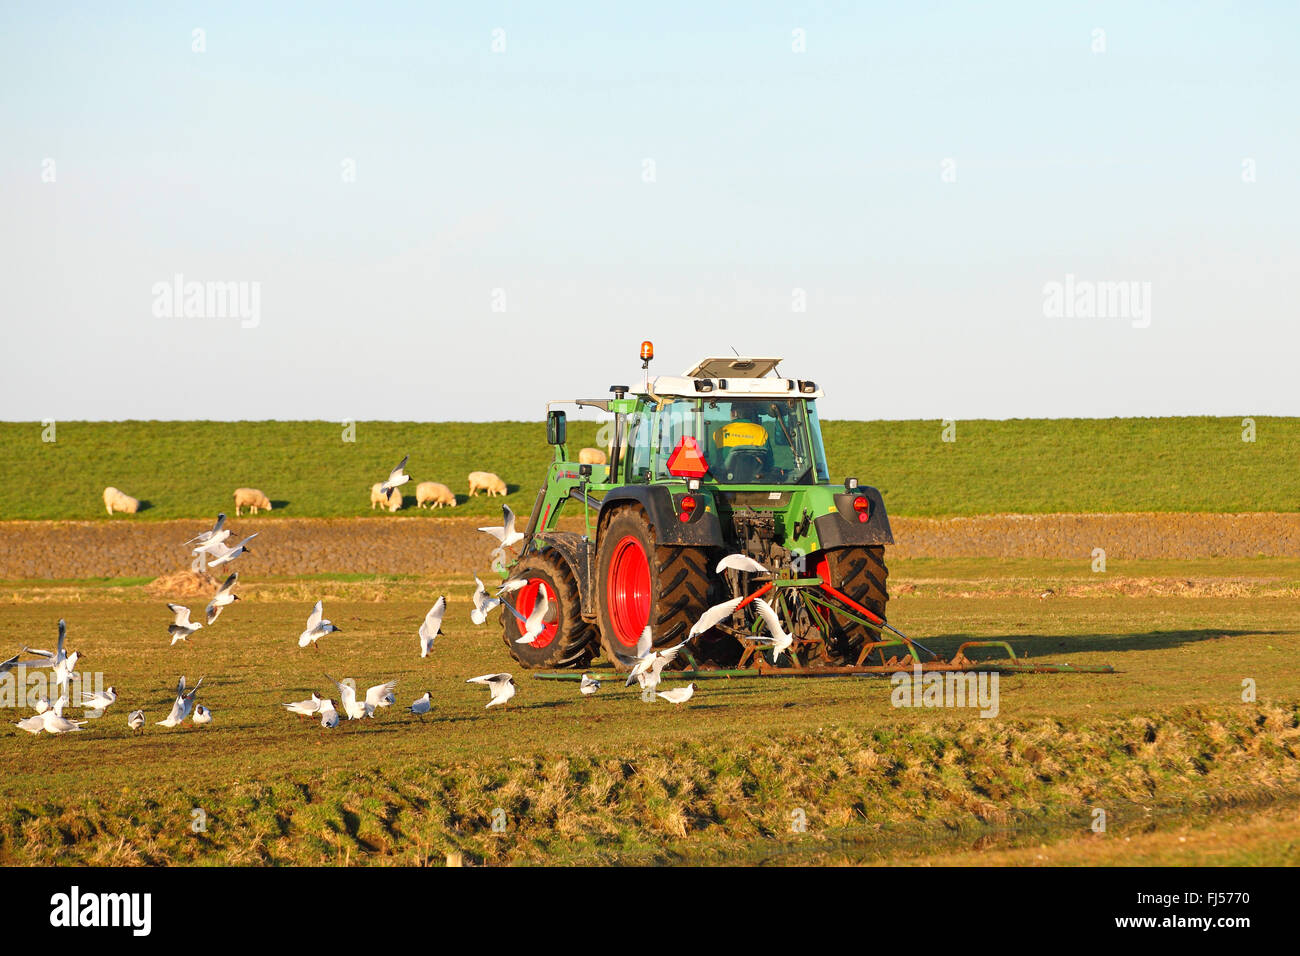 Herbage obtient un bon niveau du sol en frottant avec une barre de fer en mars, les goélands suivez le tracteur, Pays-Bas, Frise Banque D'Images